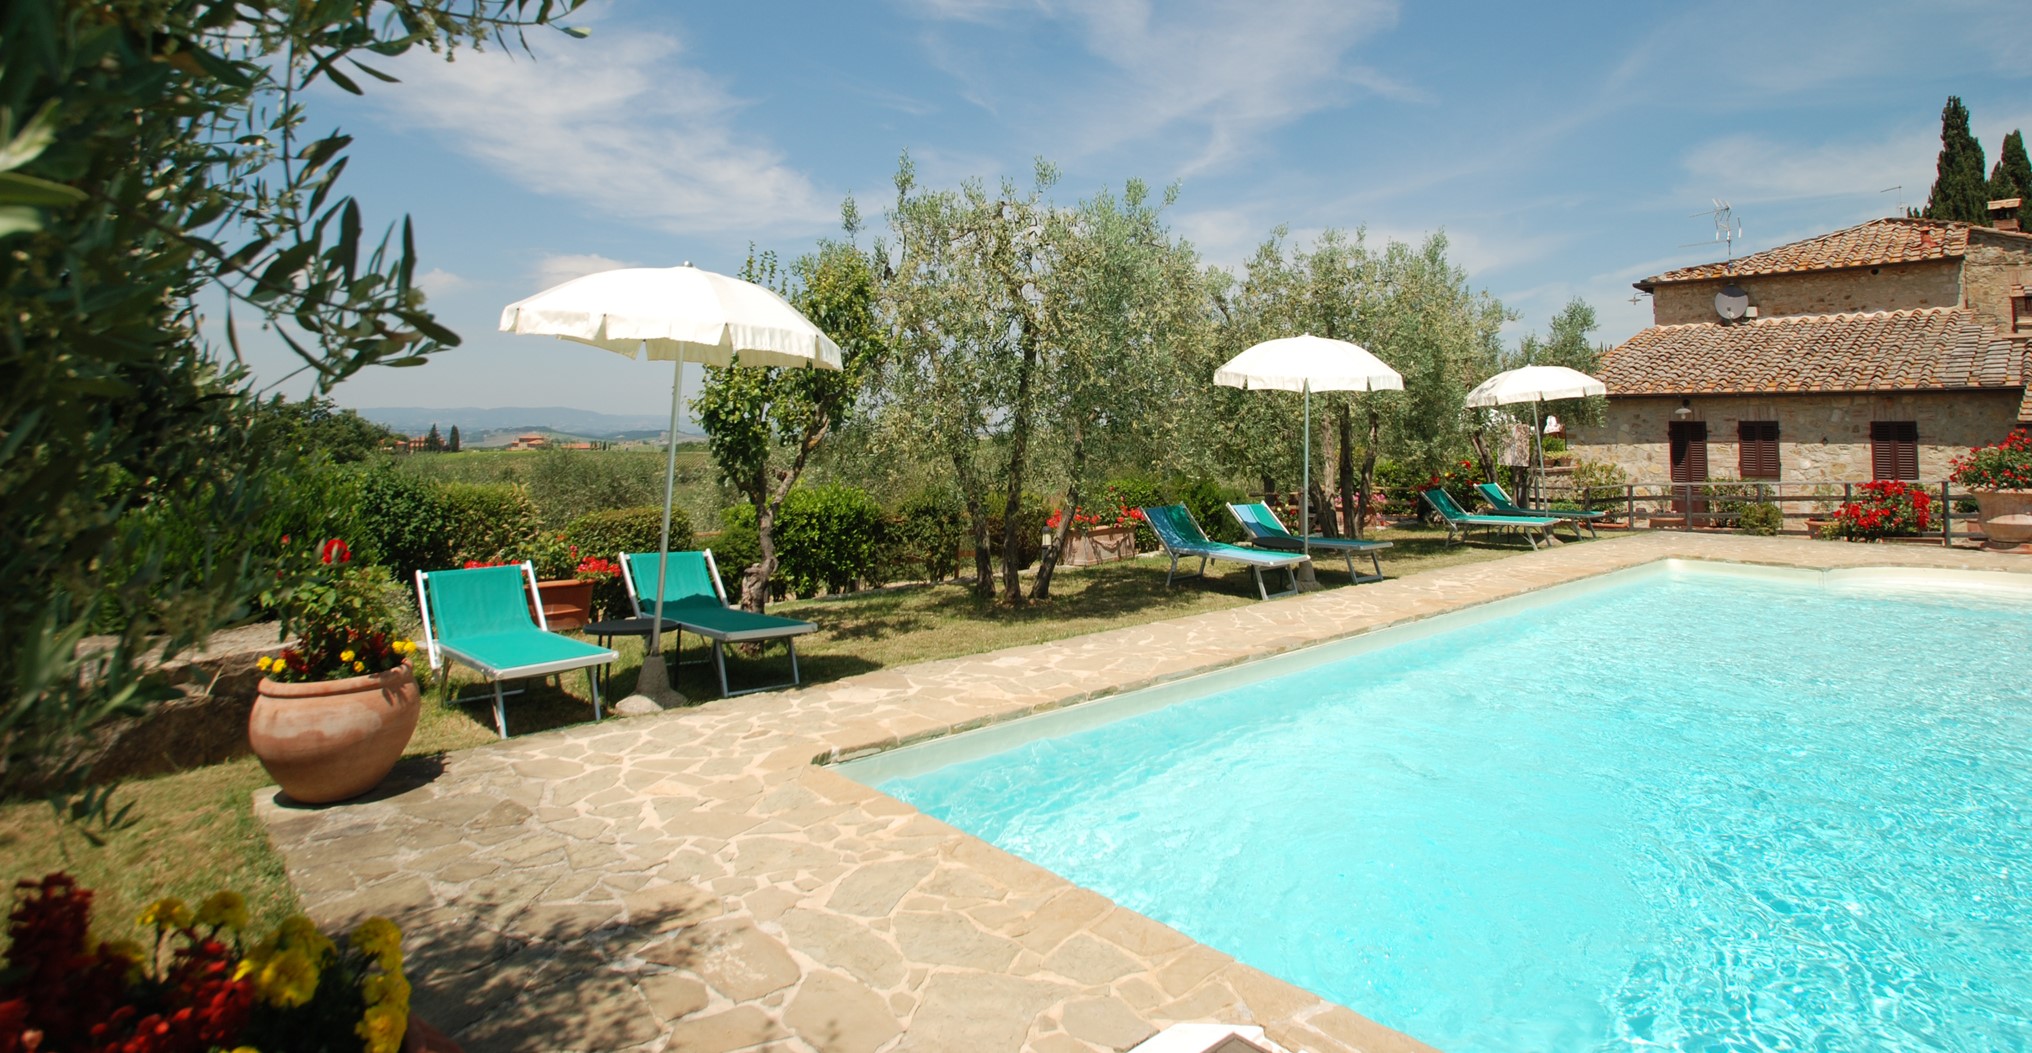 350_Agriturismo, Toscane, vakantiehuis met zwembad, Siena, Chianti, Quercegrossa, Poderino, Italie, appartementen 14 kopie